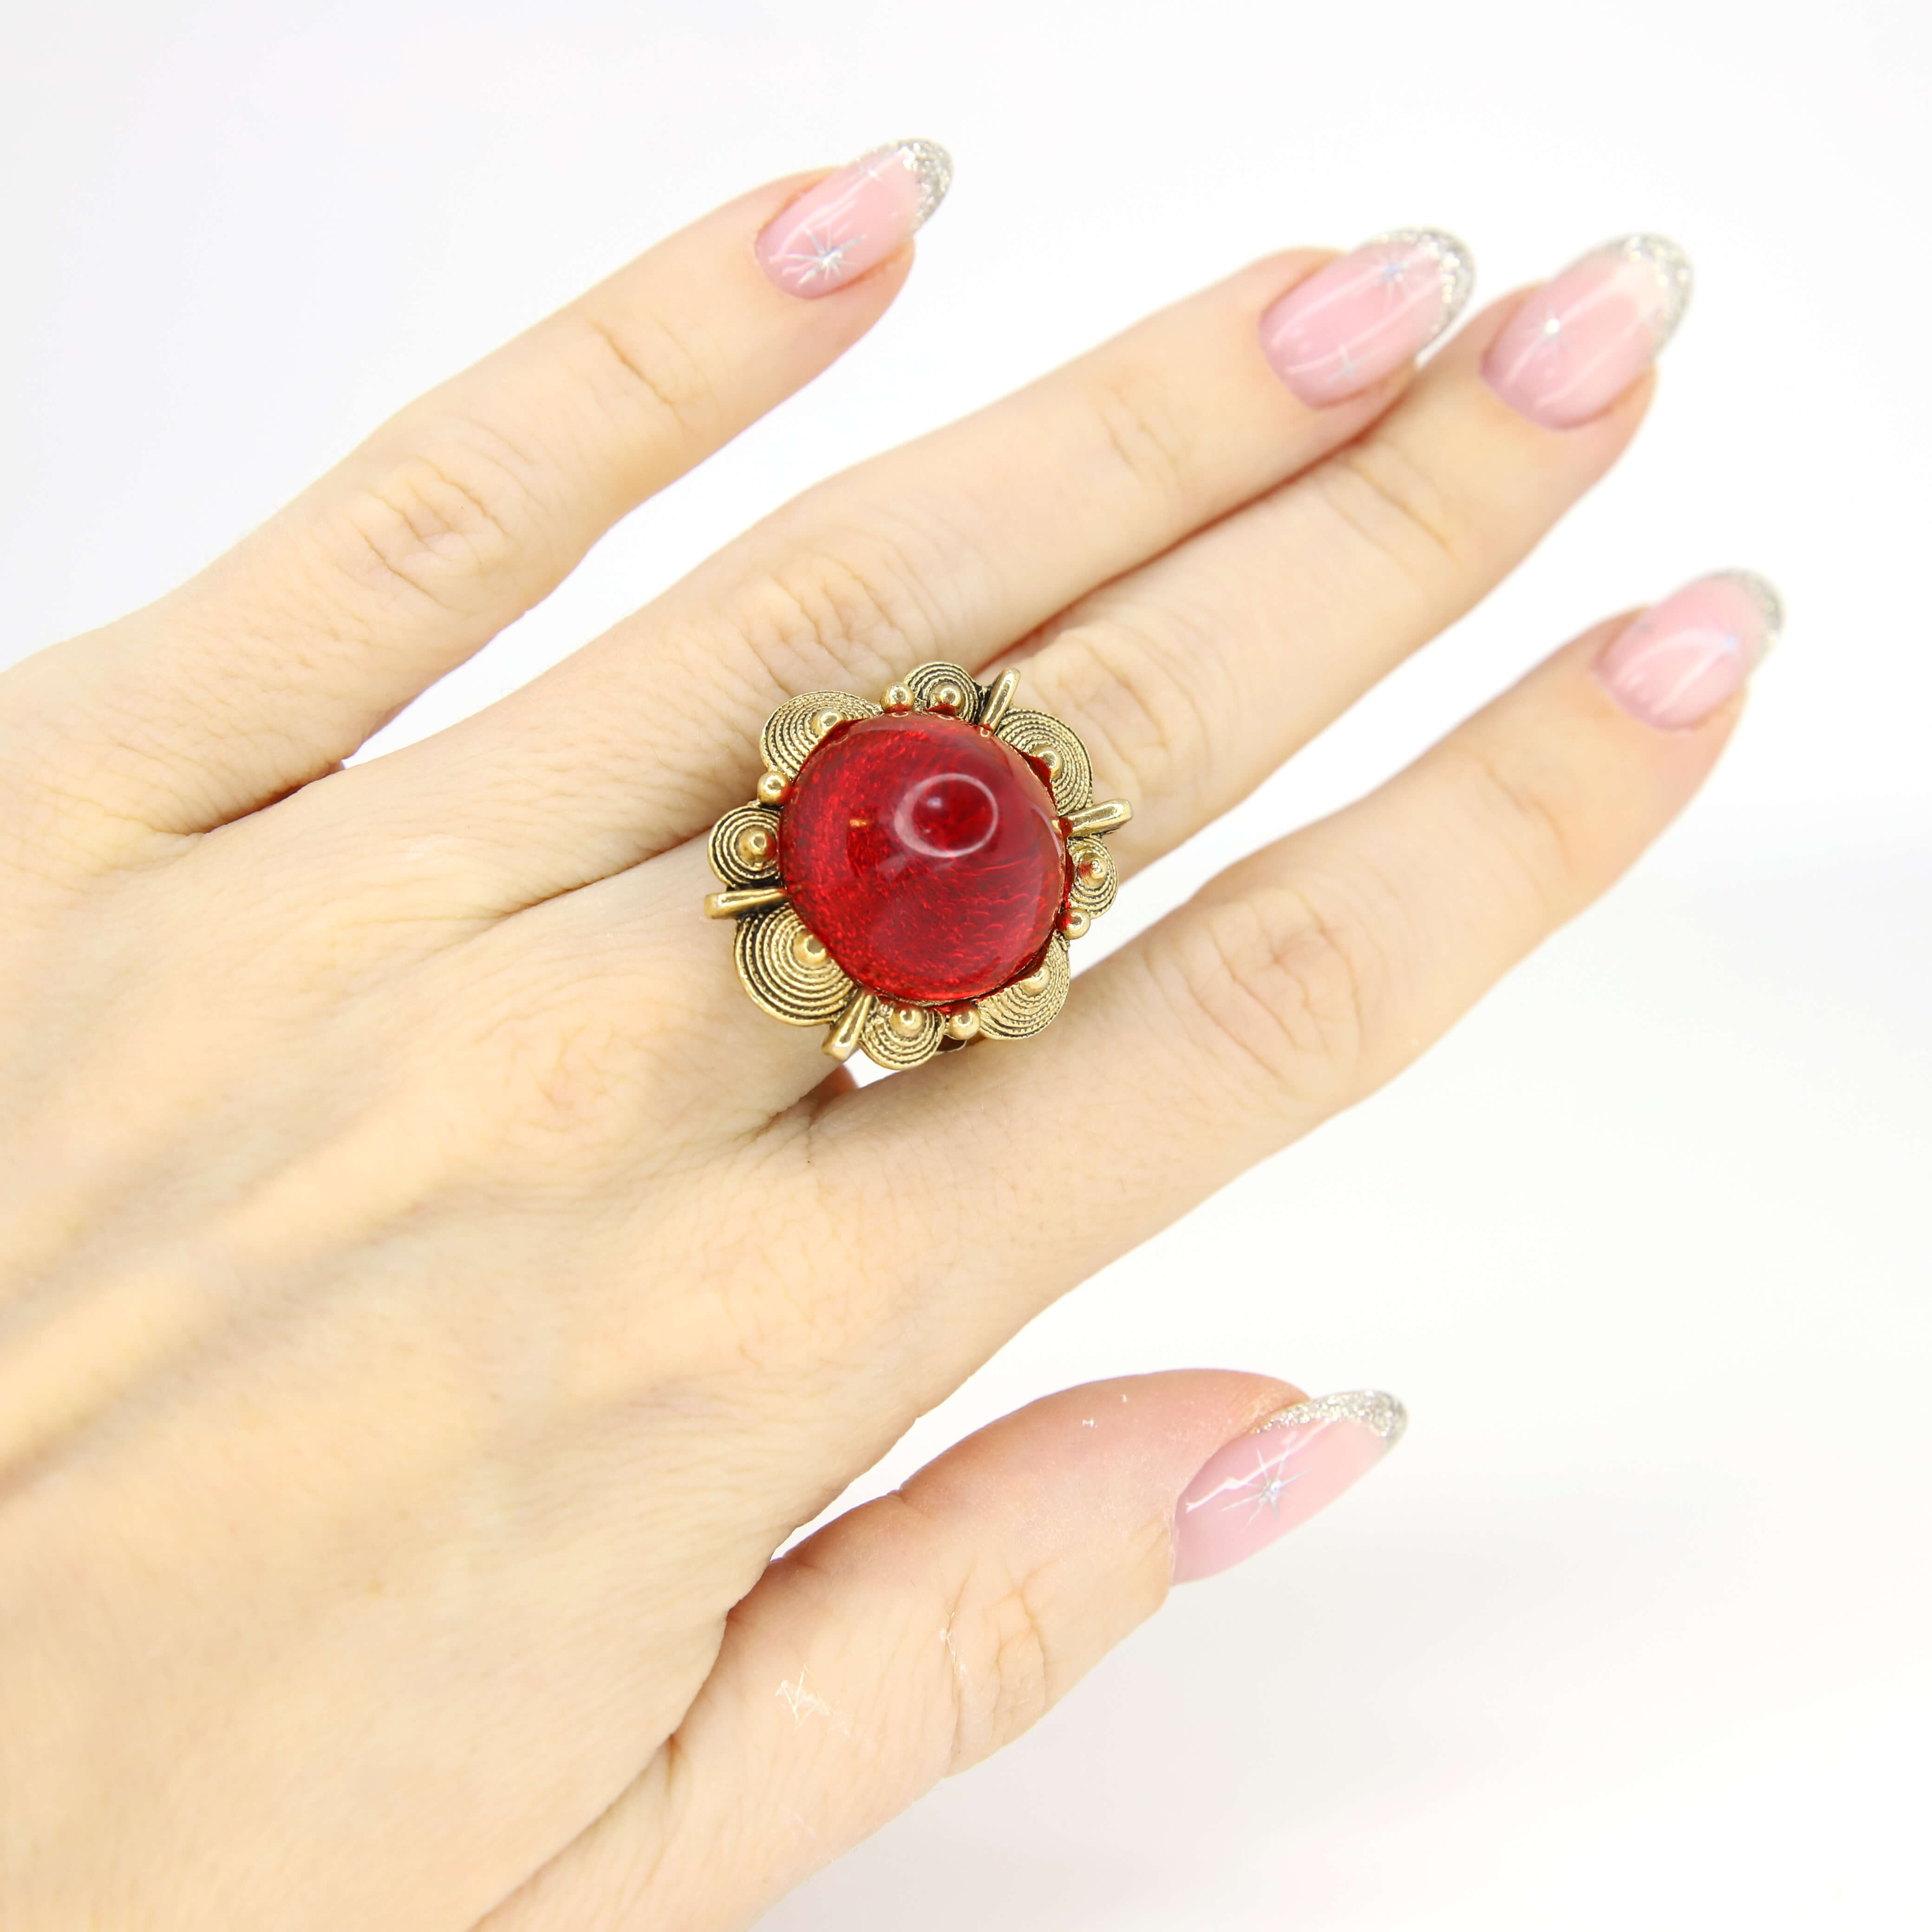 Винтажное кольцо с кабошоном размер 16.5-18, цвет Красный, фото 2